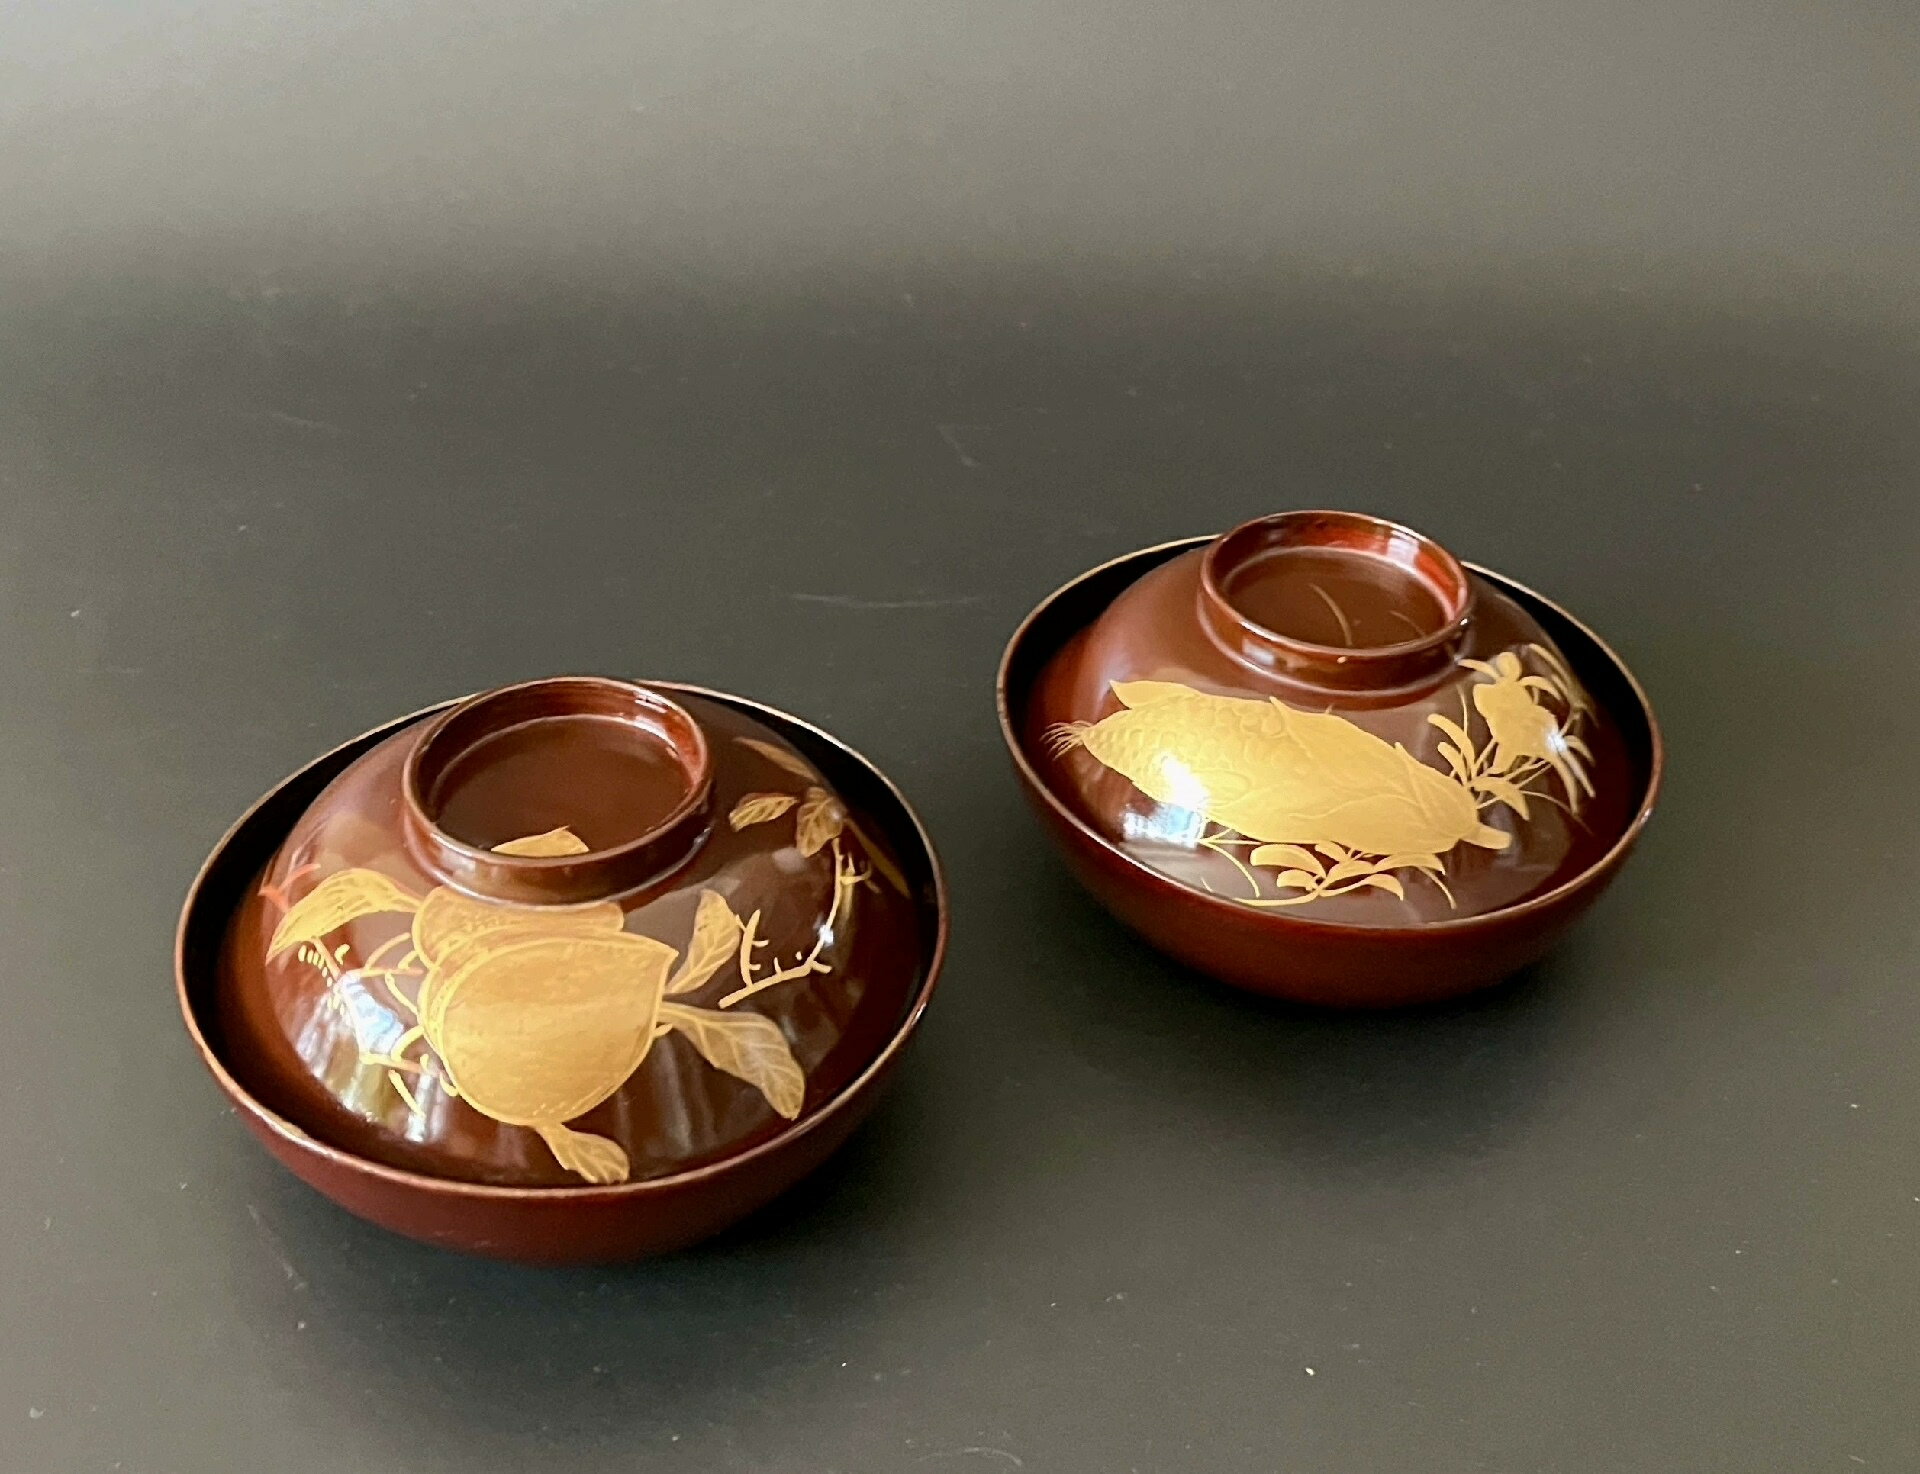 日本明治大正時期老漆器 厚金蒔繪一對蓋碗 內外滿繪色彩繽